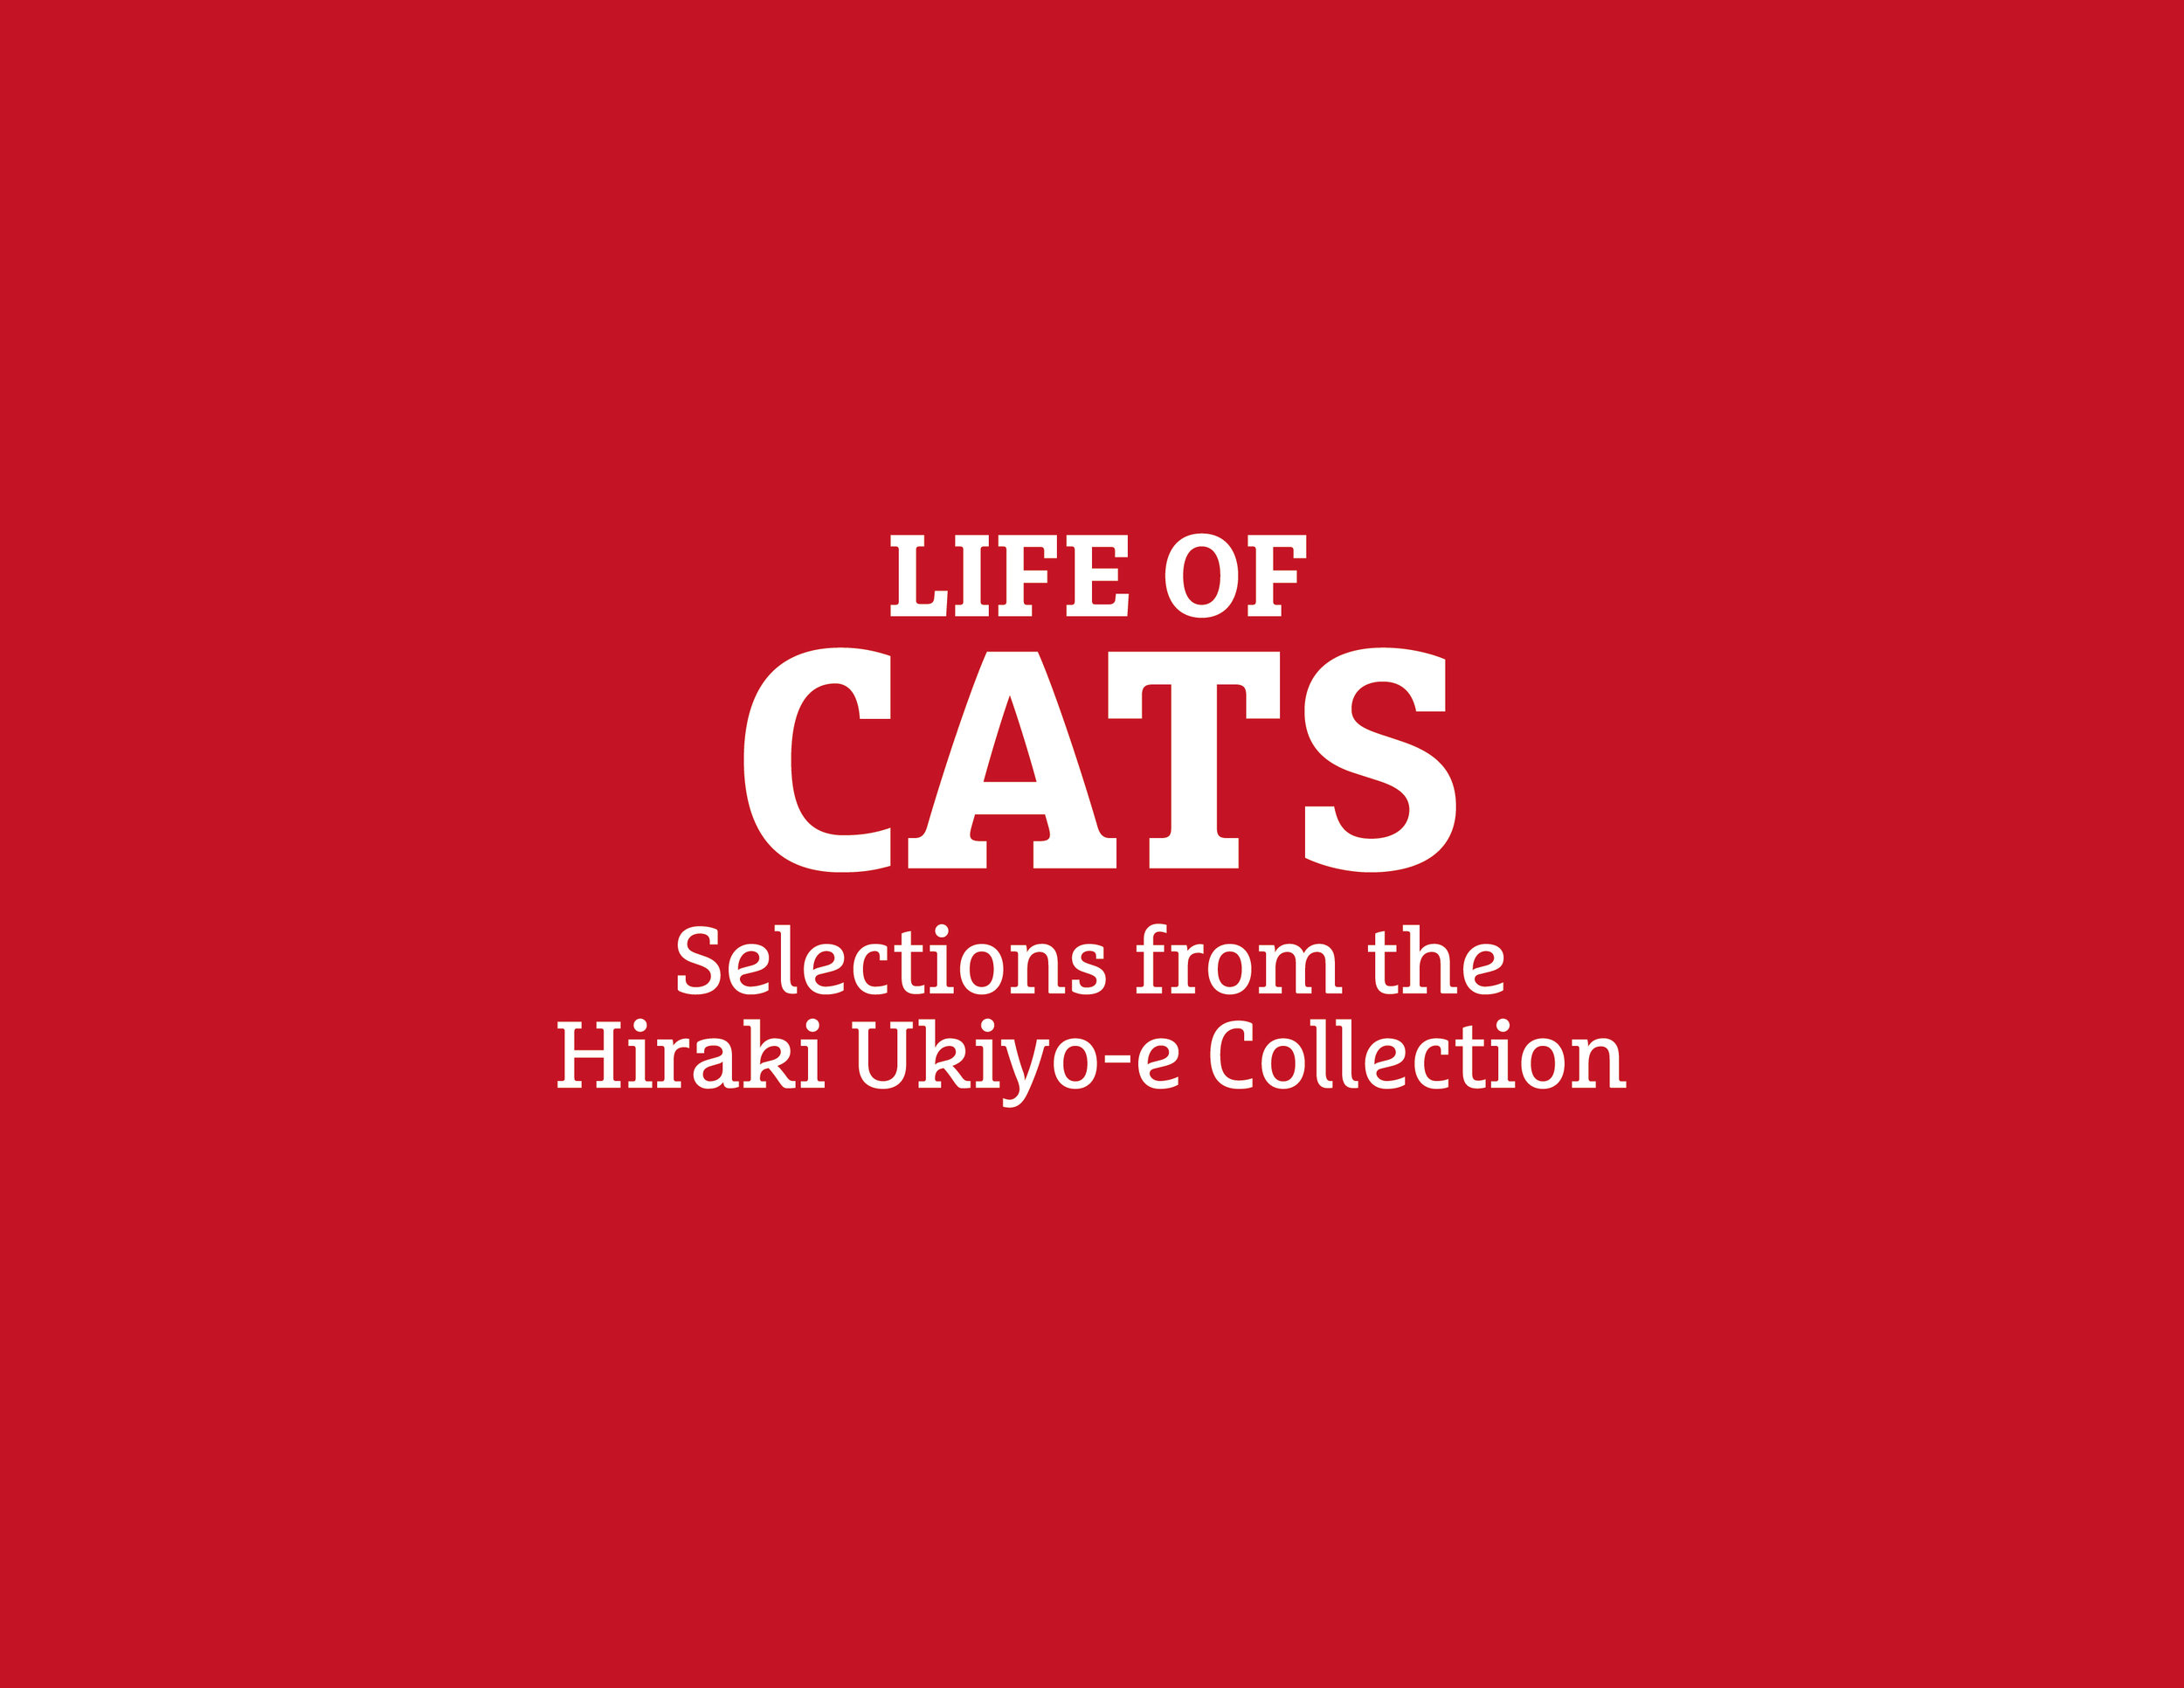 Japan_Society_Cats-01.jpg